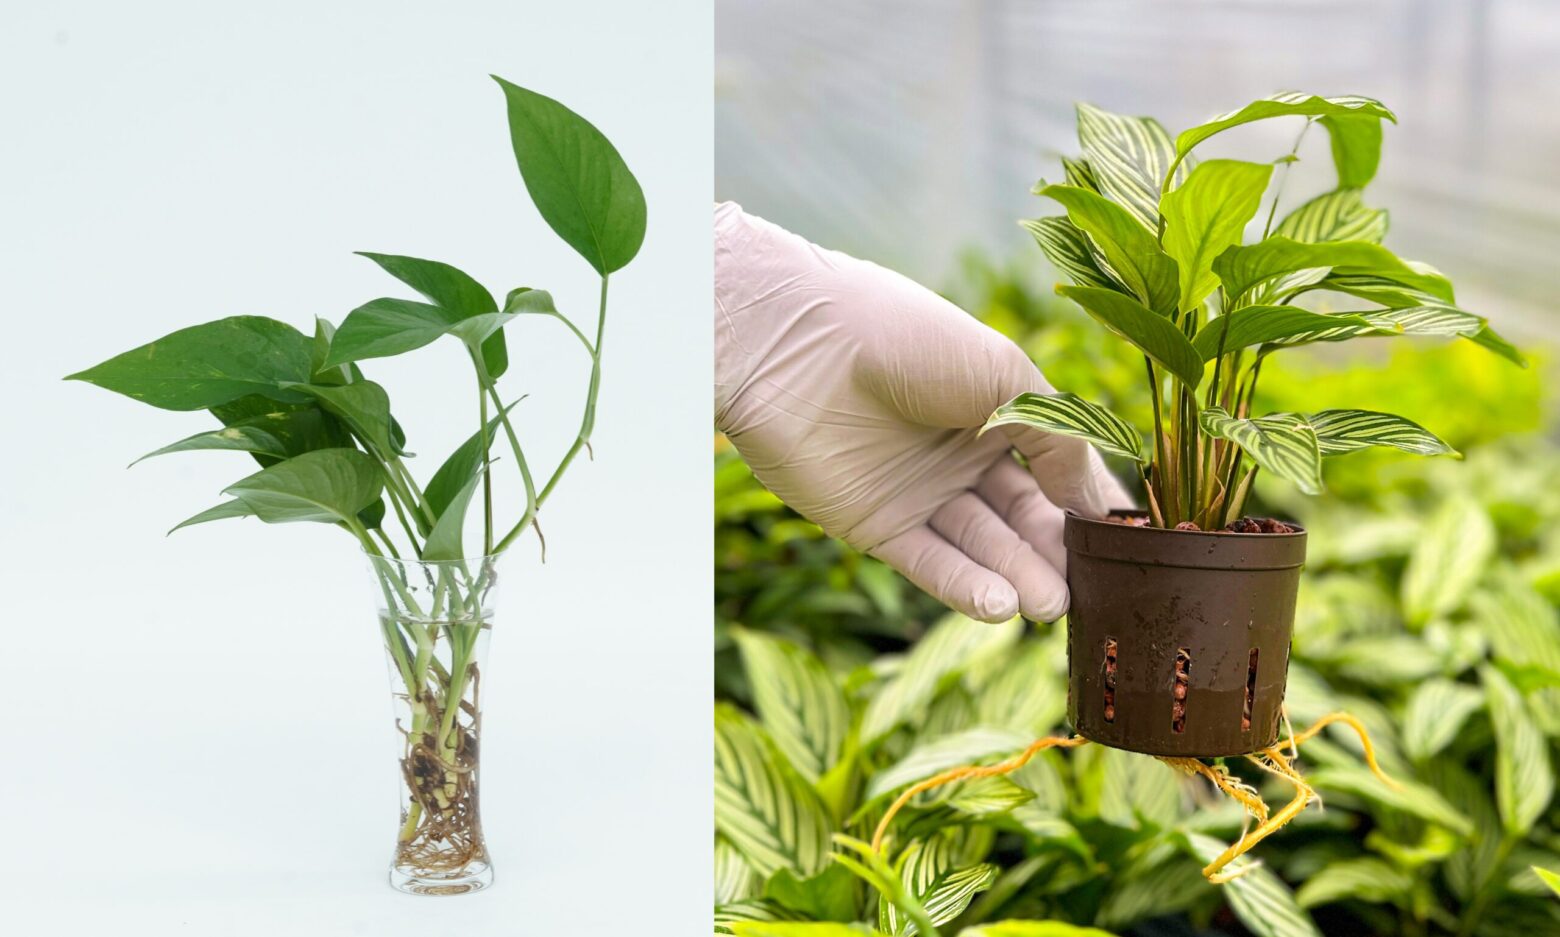 (좌)일반적인 수경식물. 뿌리를 털어 물에 담근 모습입니다. (우) 에코피플 수경 농장에서 완전히 적응한 식물. 화분 밖으로 나온 뿌리가 건강히 적응했음을 보여줍니다. 